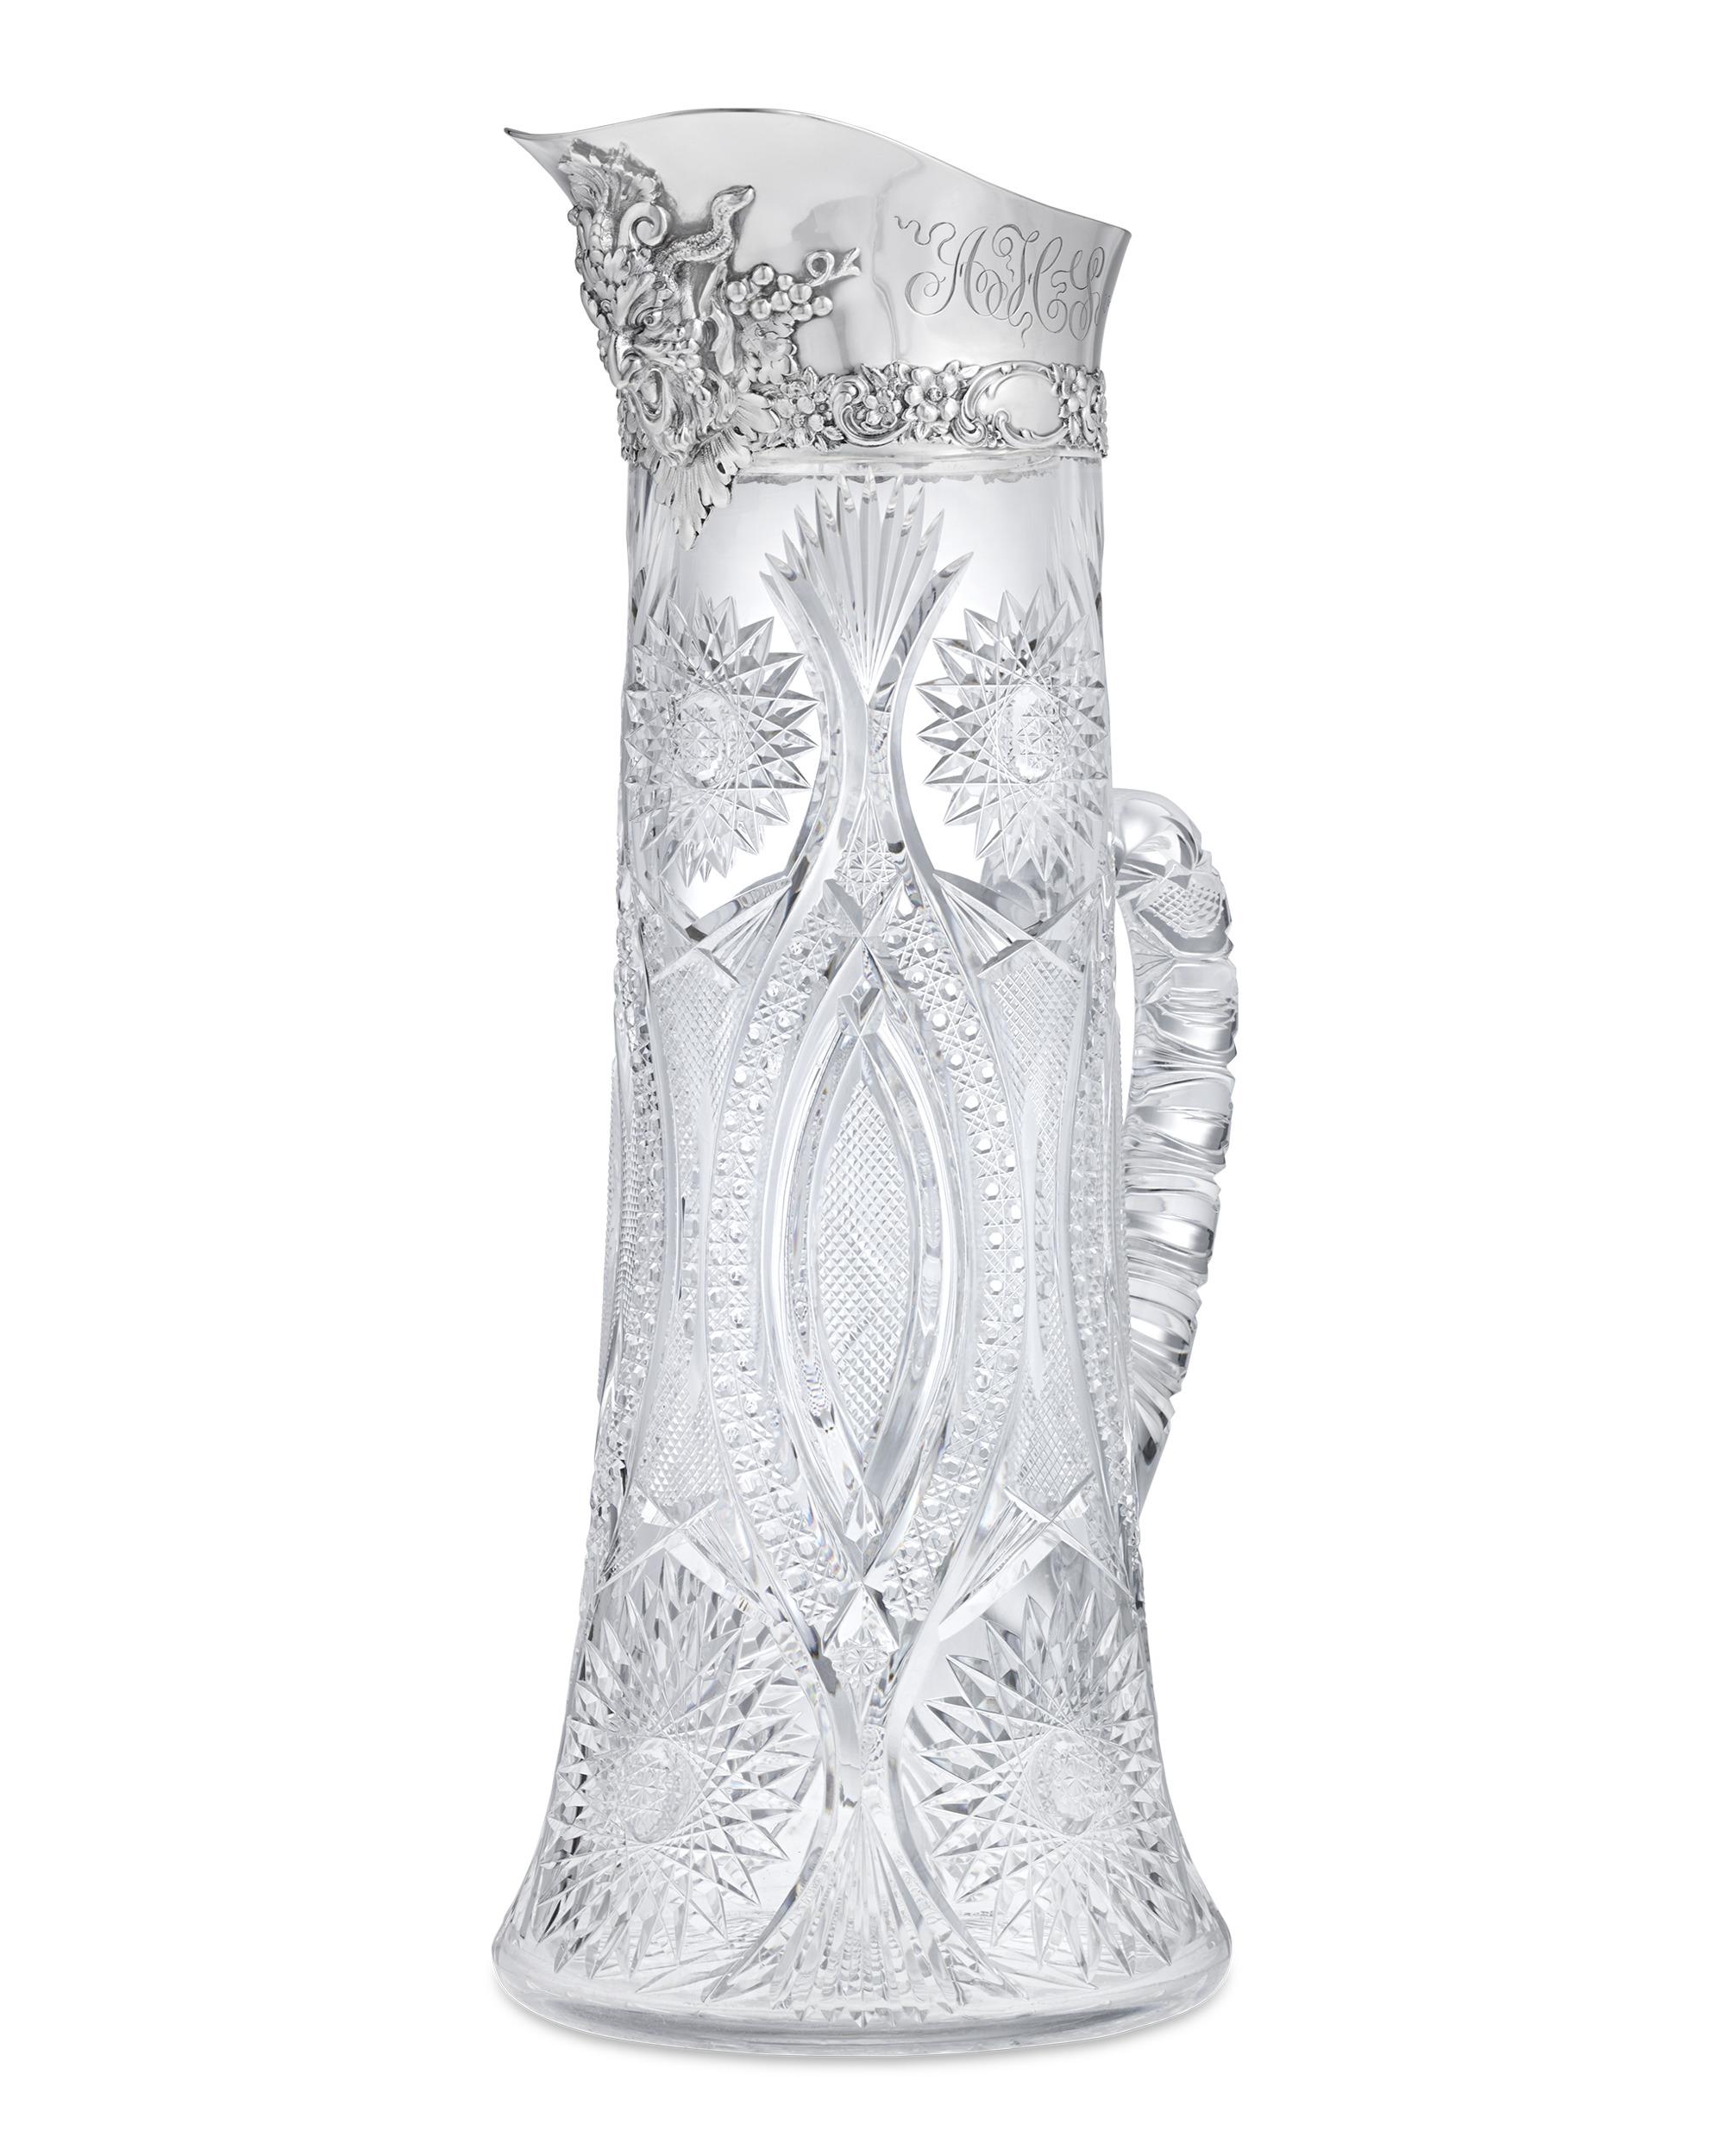 Diese außergewöhnliche Tiffany & Co. Der Krug aus geschliffenem amerikanischem Brilliant-Glas verkörpert den raffinierten Luxus, für den das Unternehmen bekannt ist. Der Gefäßkörper erstrahlt in unvergleichlichem Glanz mit mundgeblasenen und